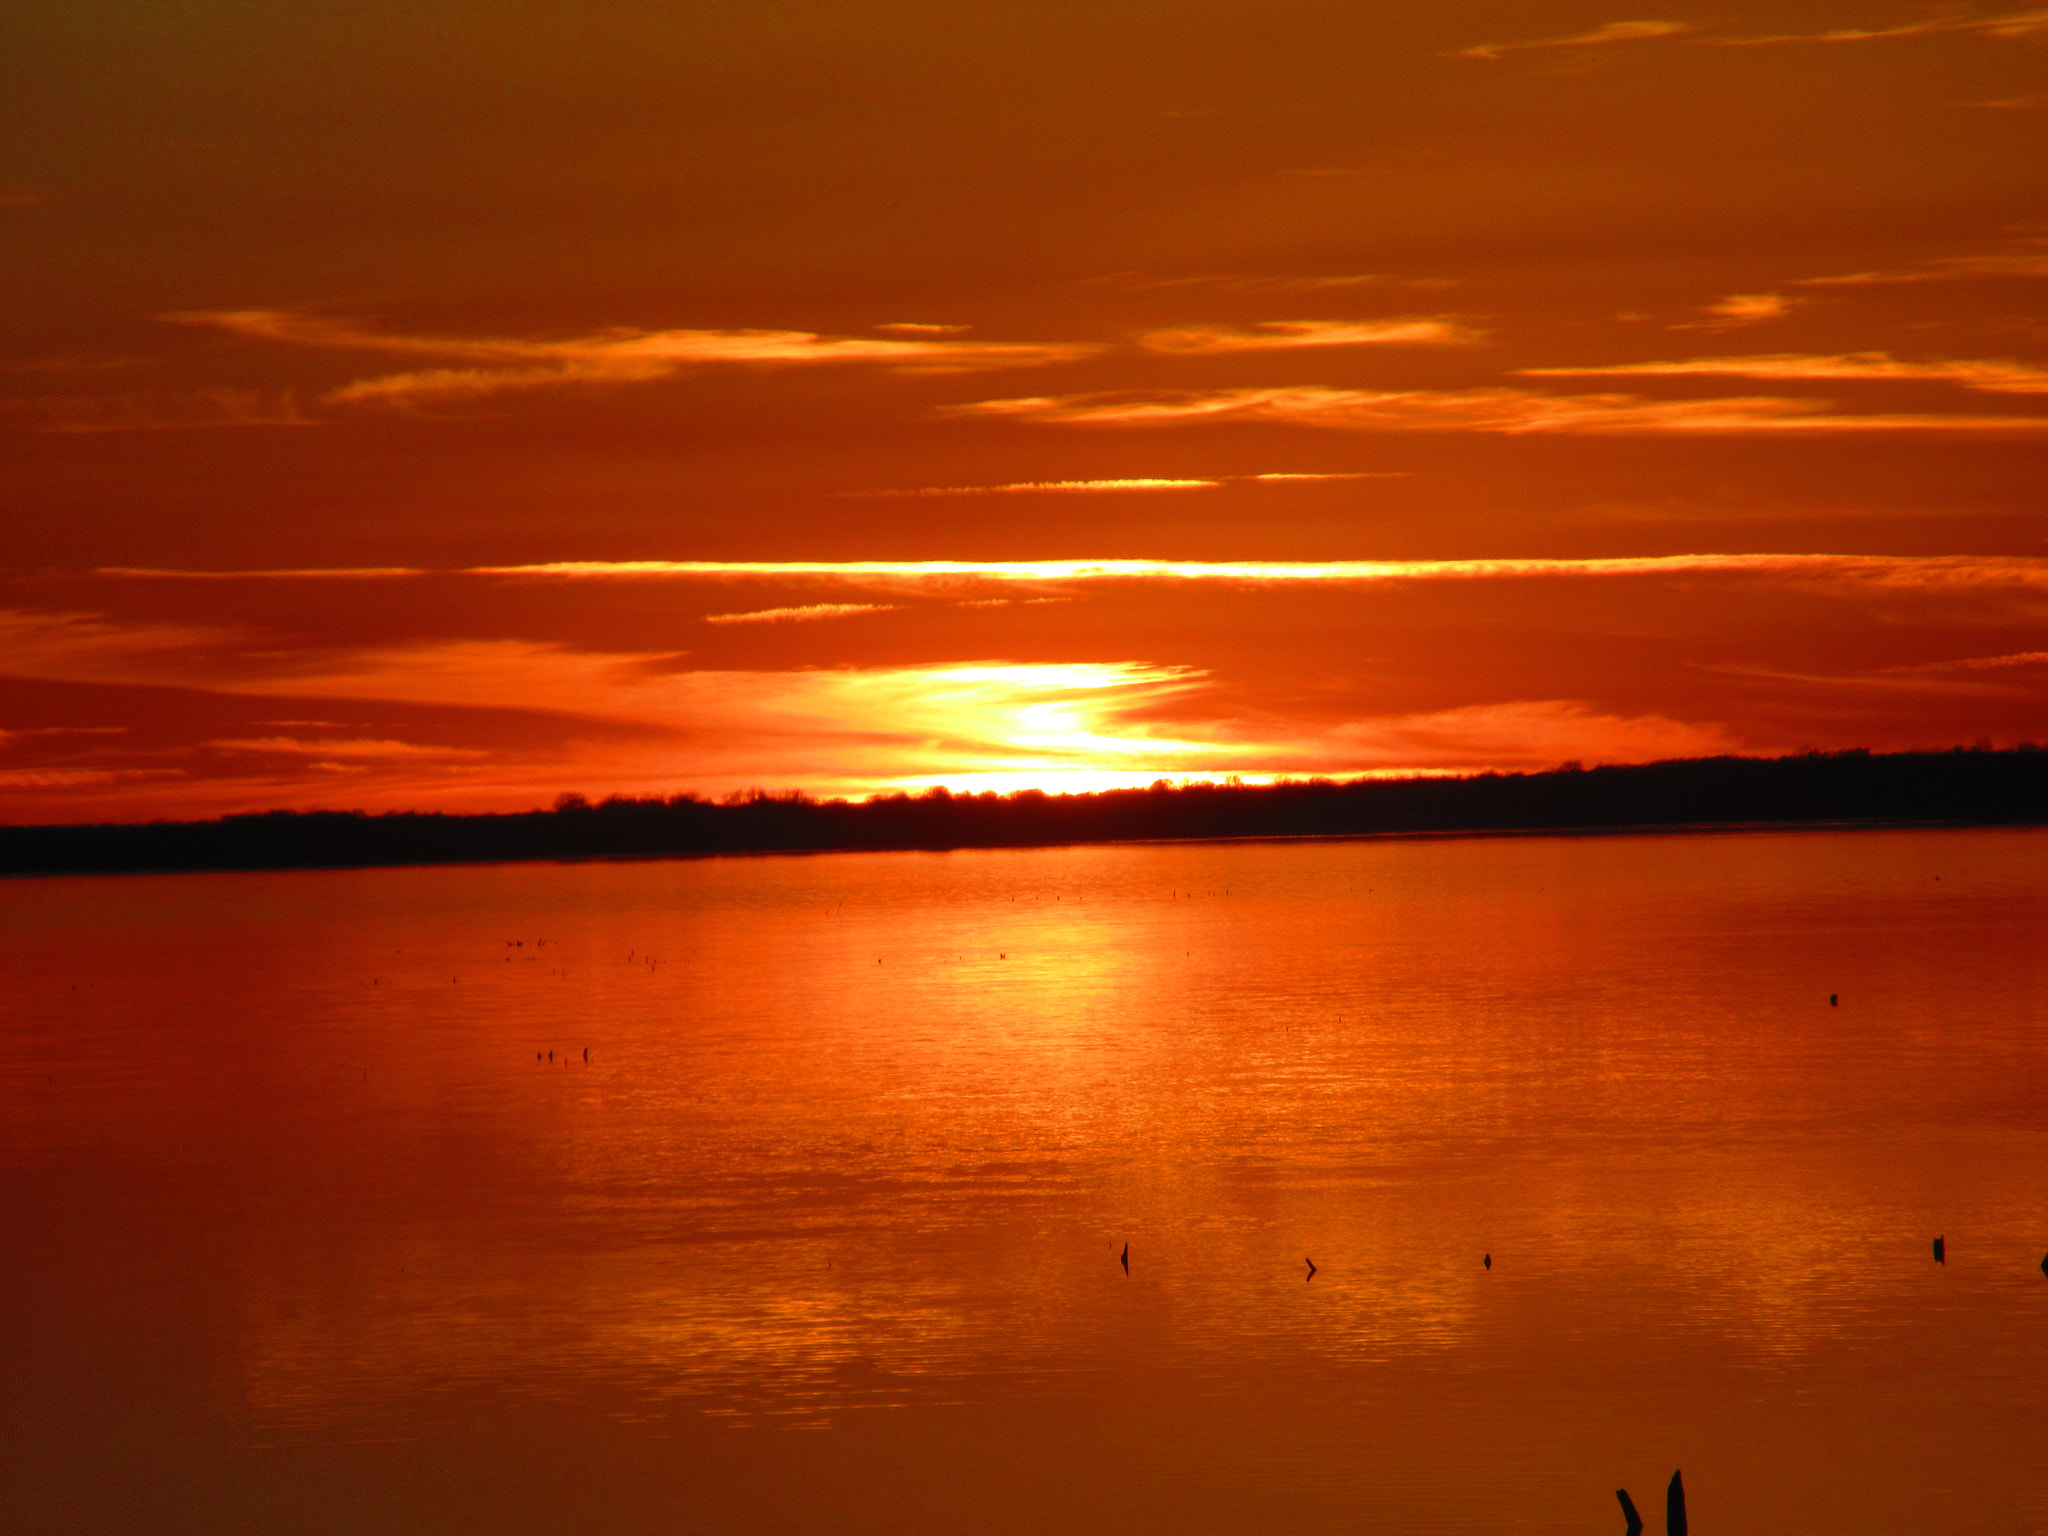 Canon PowerShot ELPH 360 HS (IXUS 285 HS / IXY 650) sample photo. Lake eufaula sunset photography